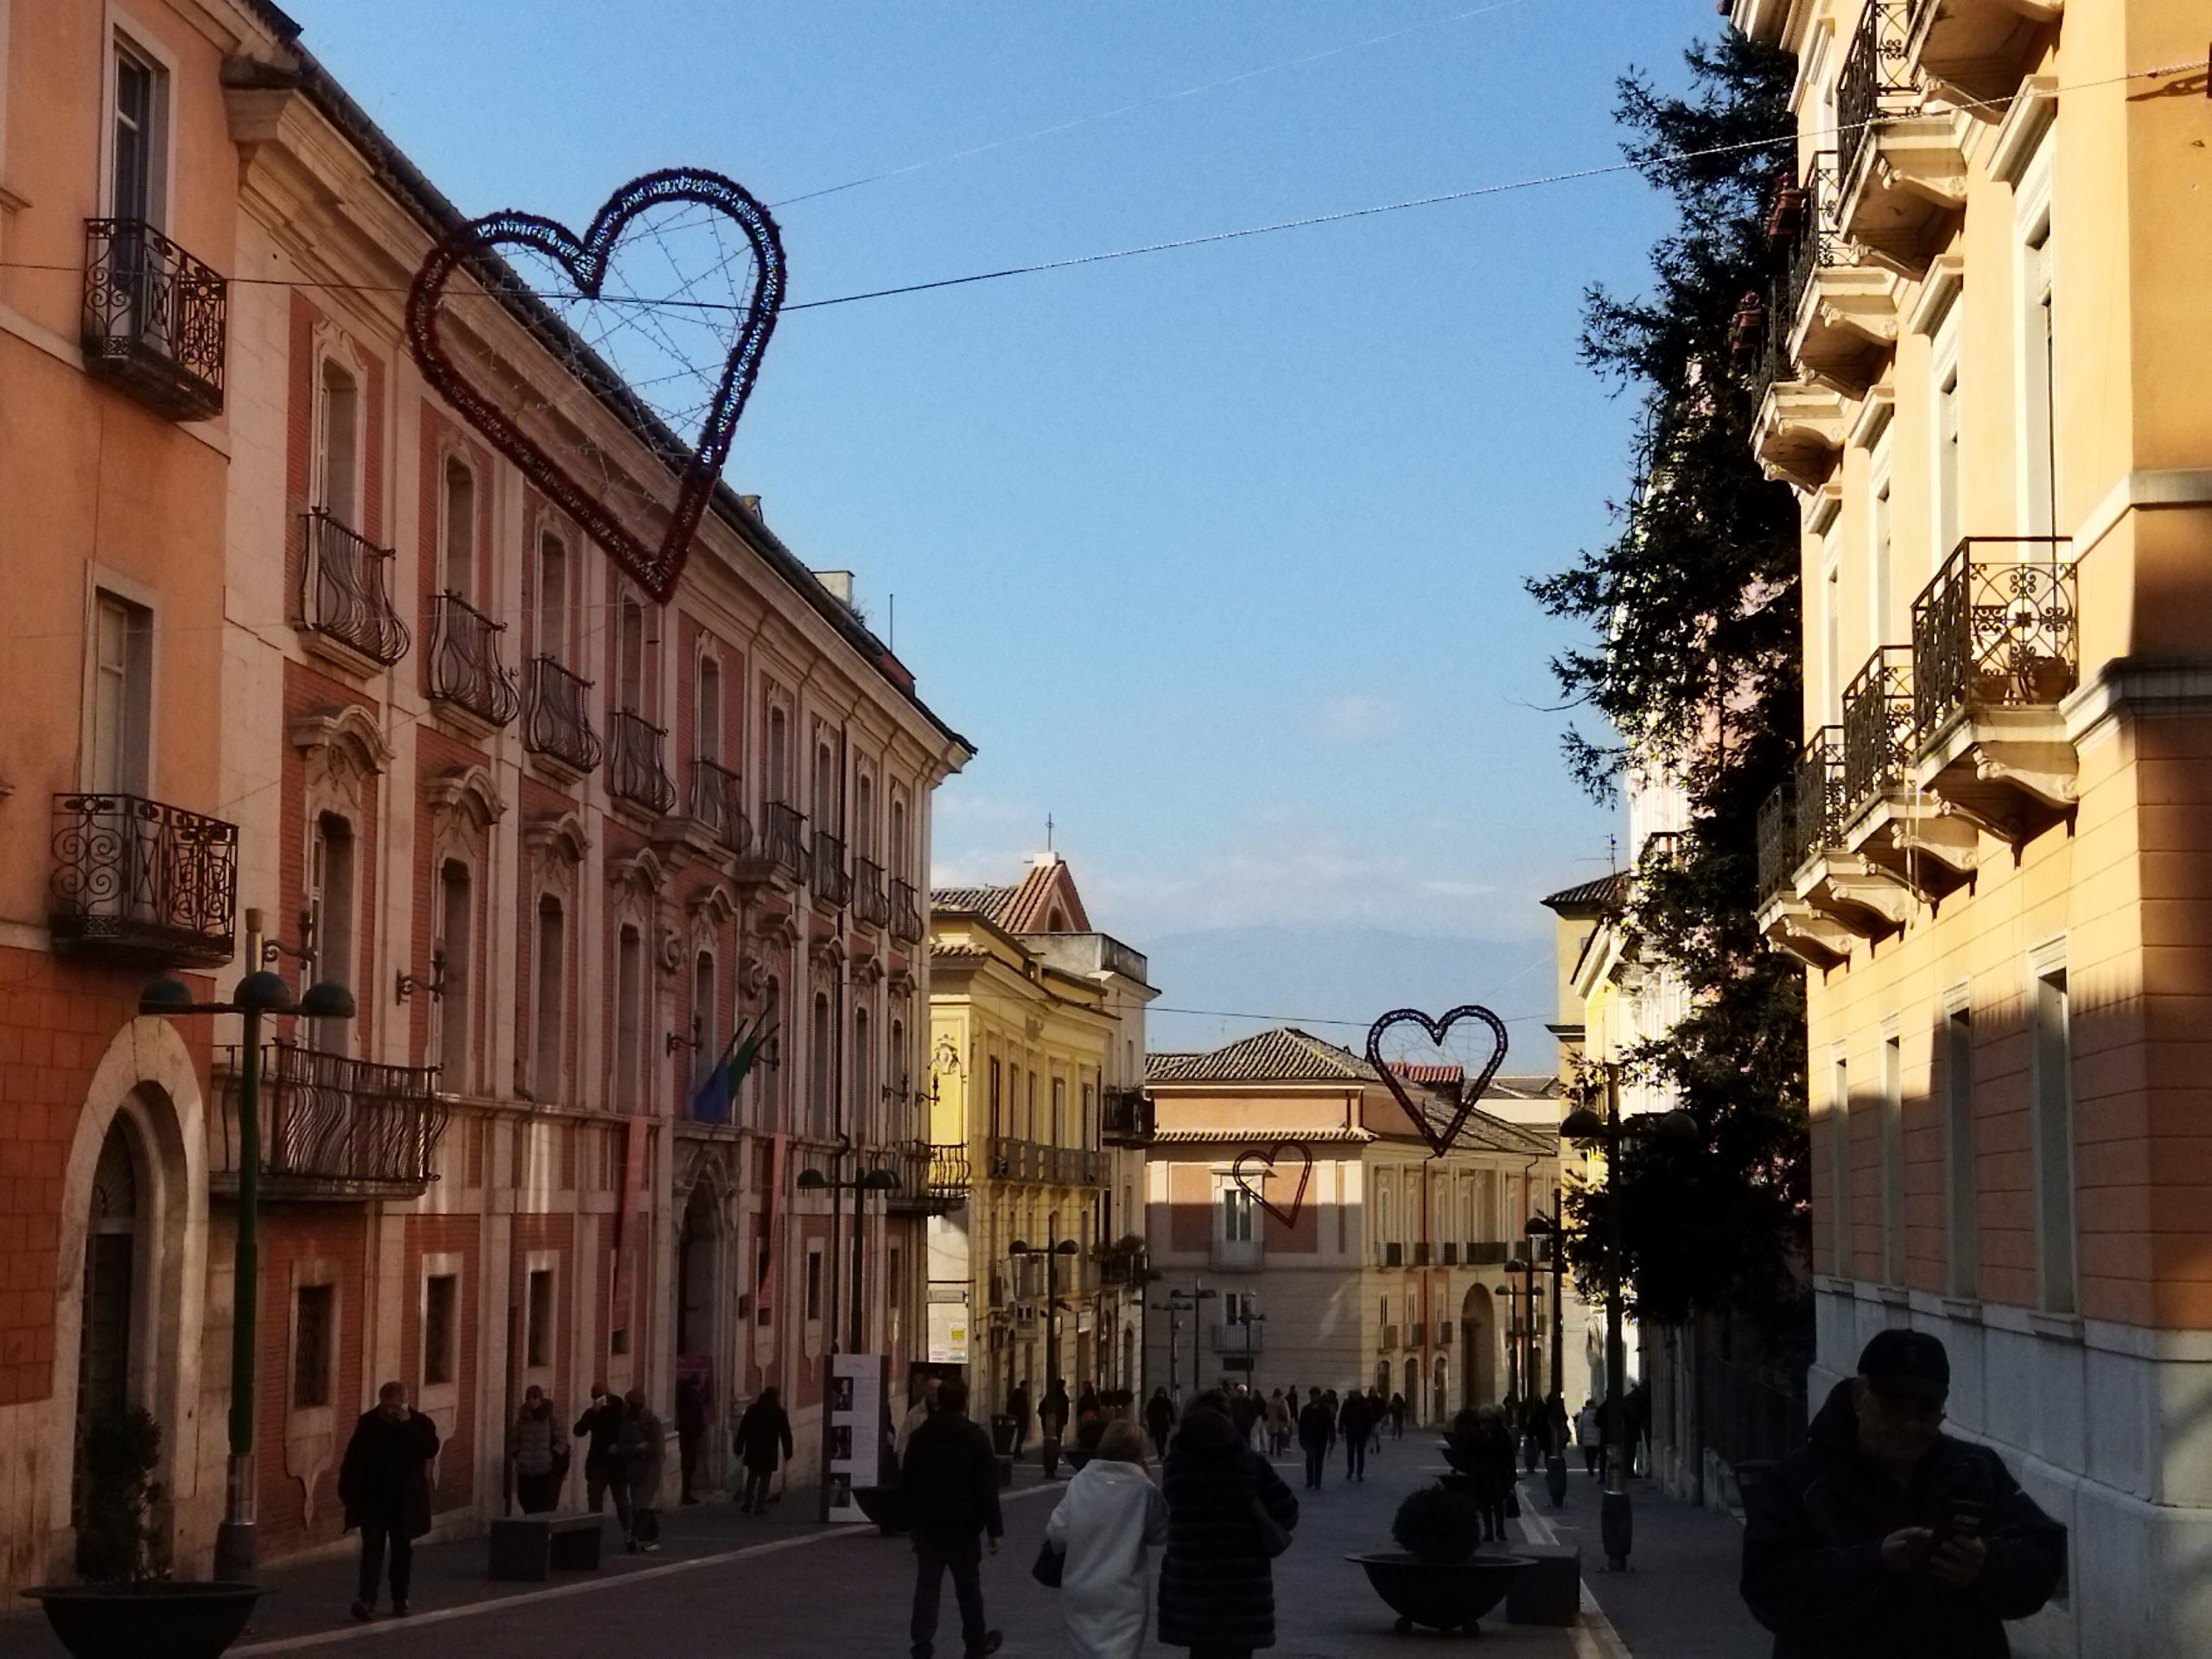 Nel centro storico si celebra San Valentino. Per la ricorrenza dedicata agli innamorati luminarie ed eventi con “Liber Fest”